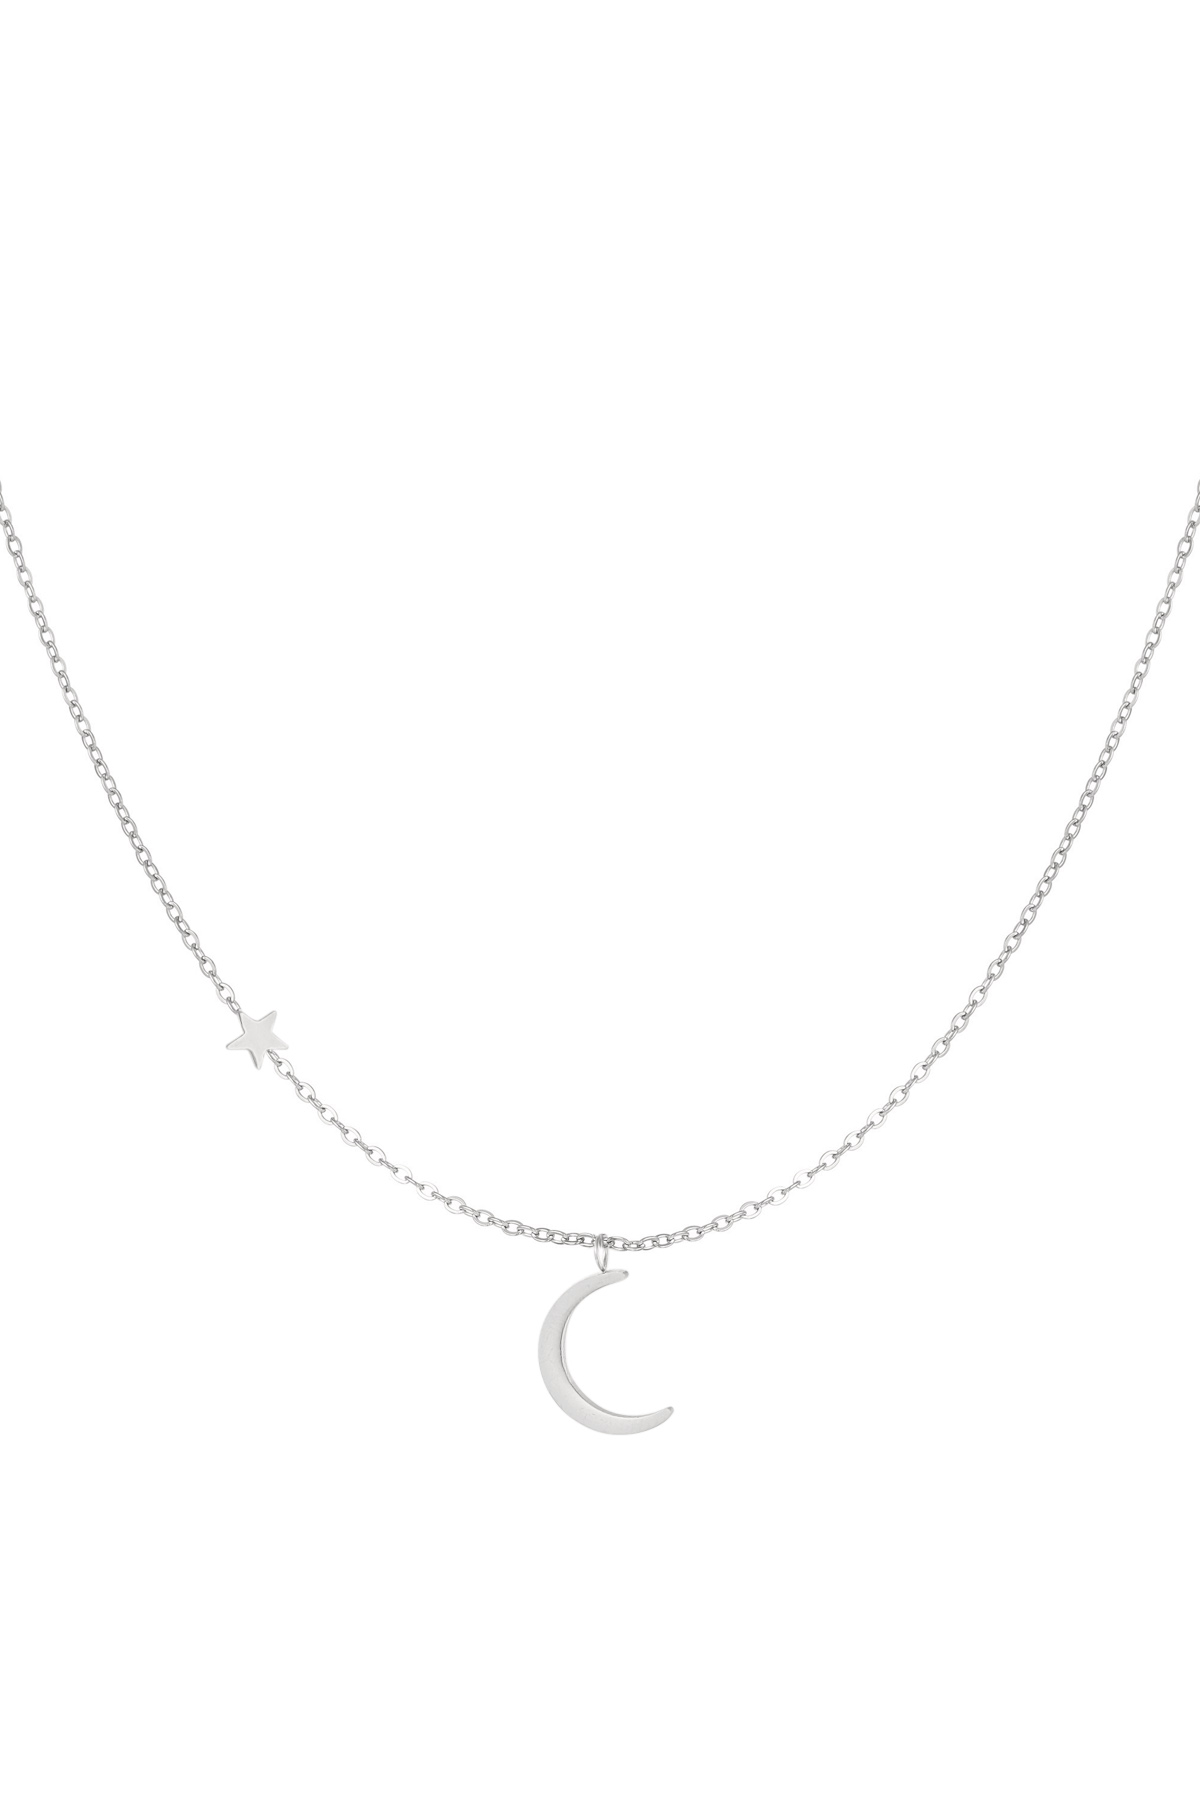 Halskette Mond mit Stern - silberner Edelstahl